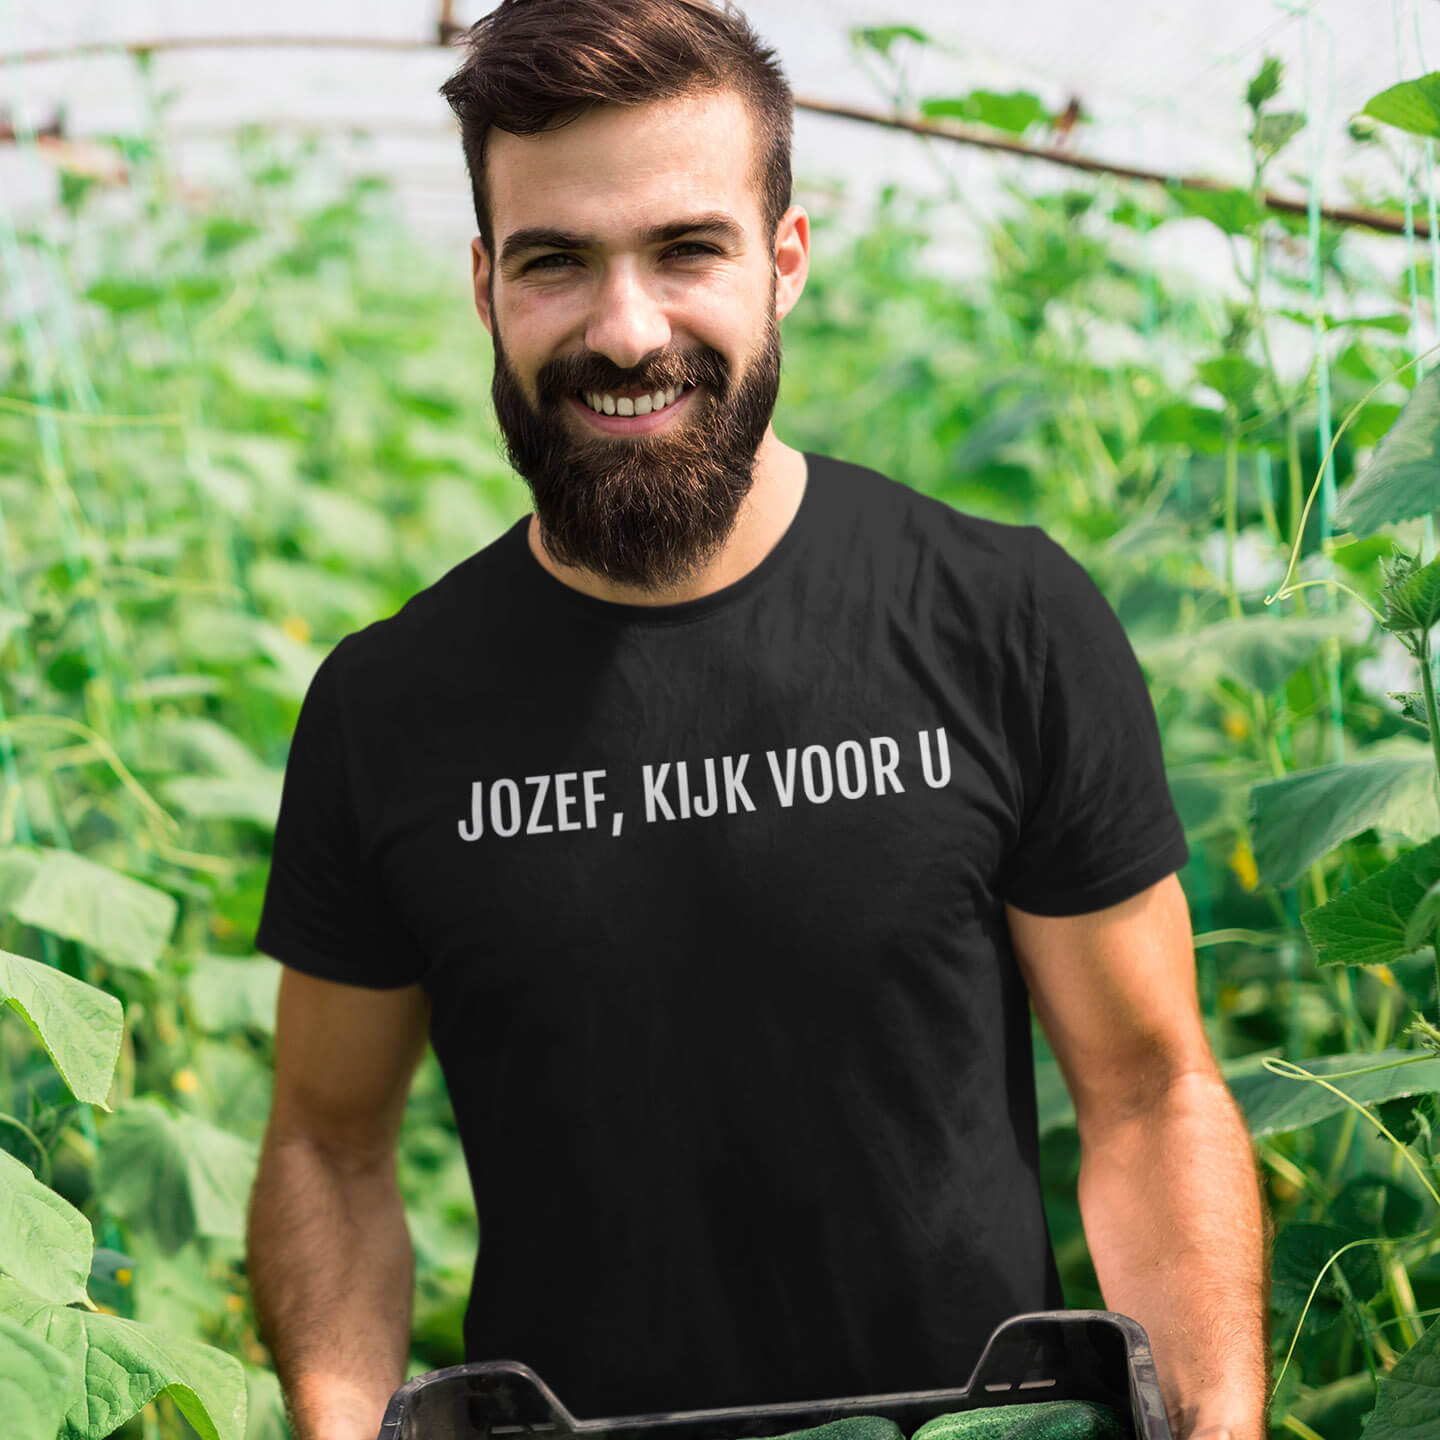 Jozef kijk voor u | Unisex T-Shirt uit Limburg - Zwart op mannelijk model